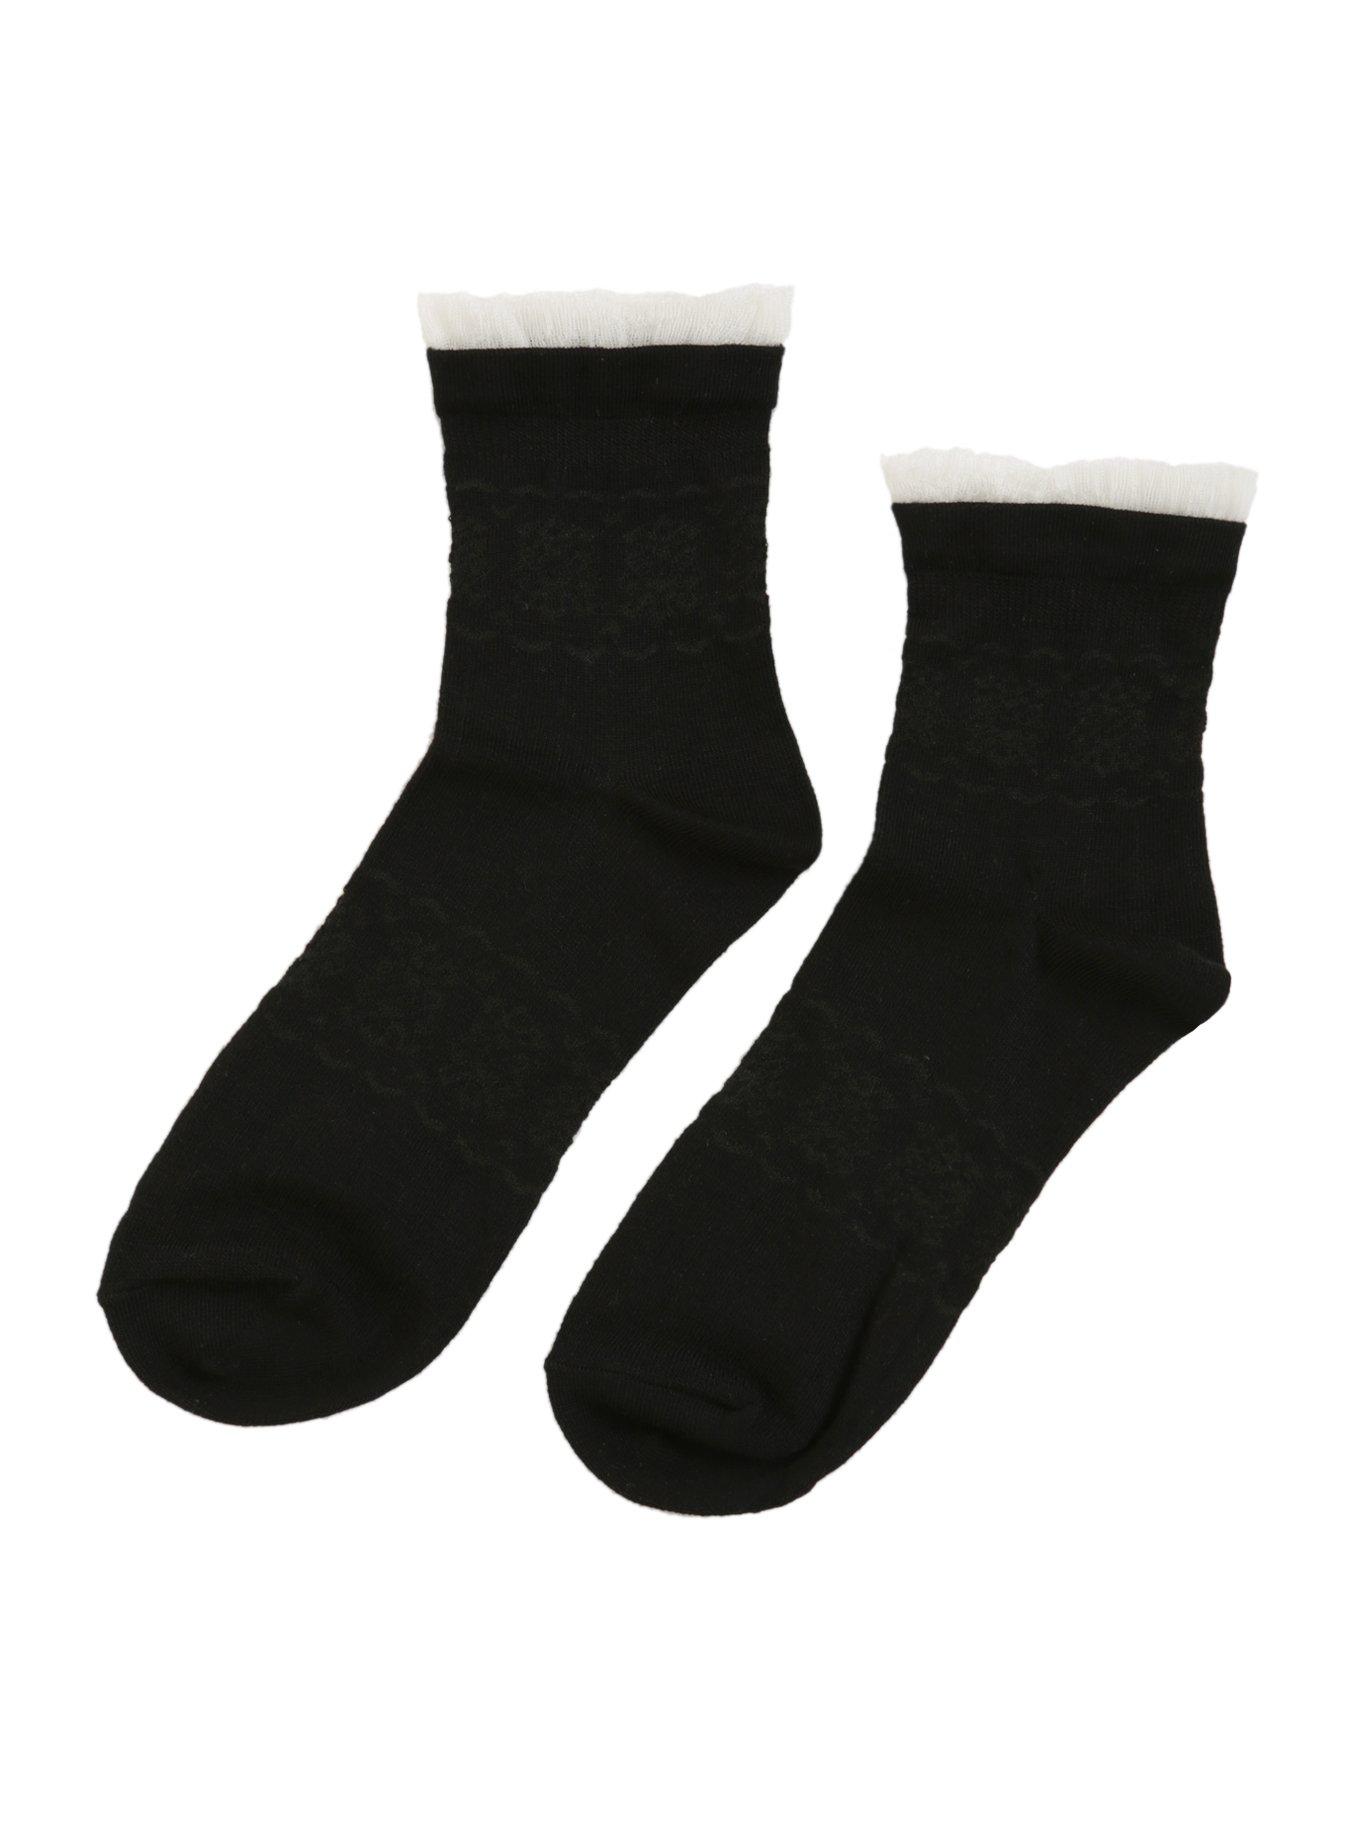 LOVEsick Black White Lace Ankle Socks, , alternate